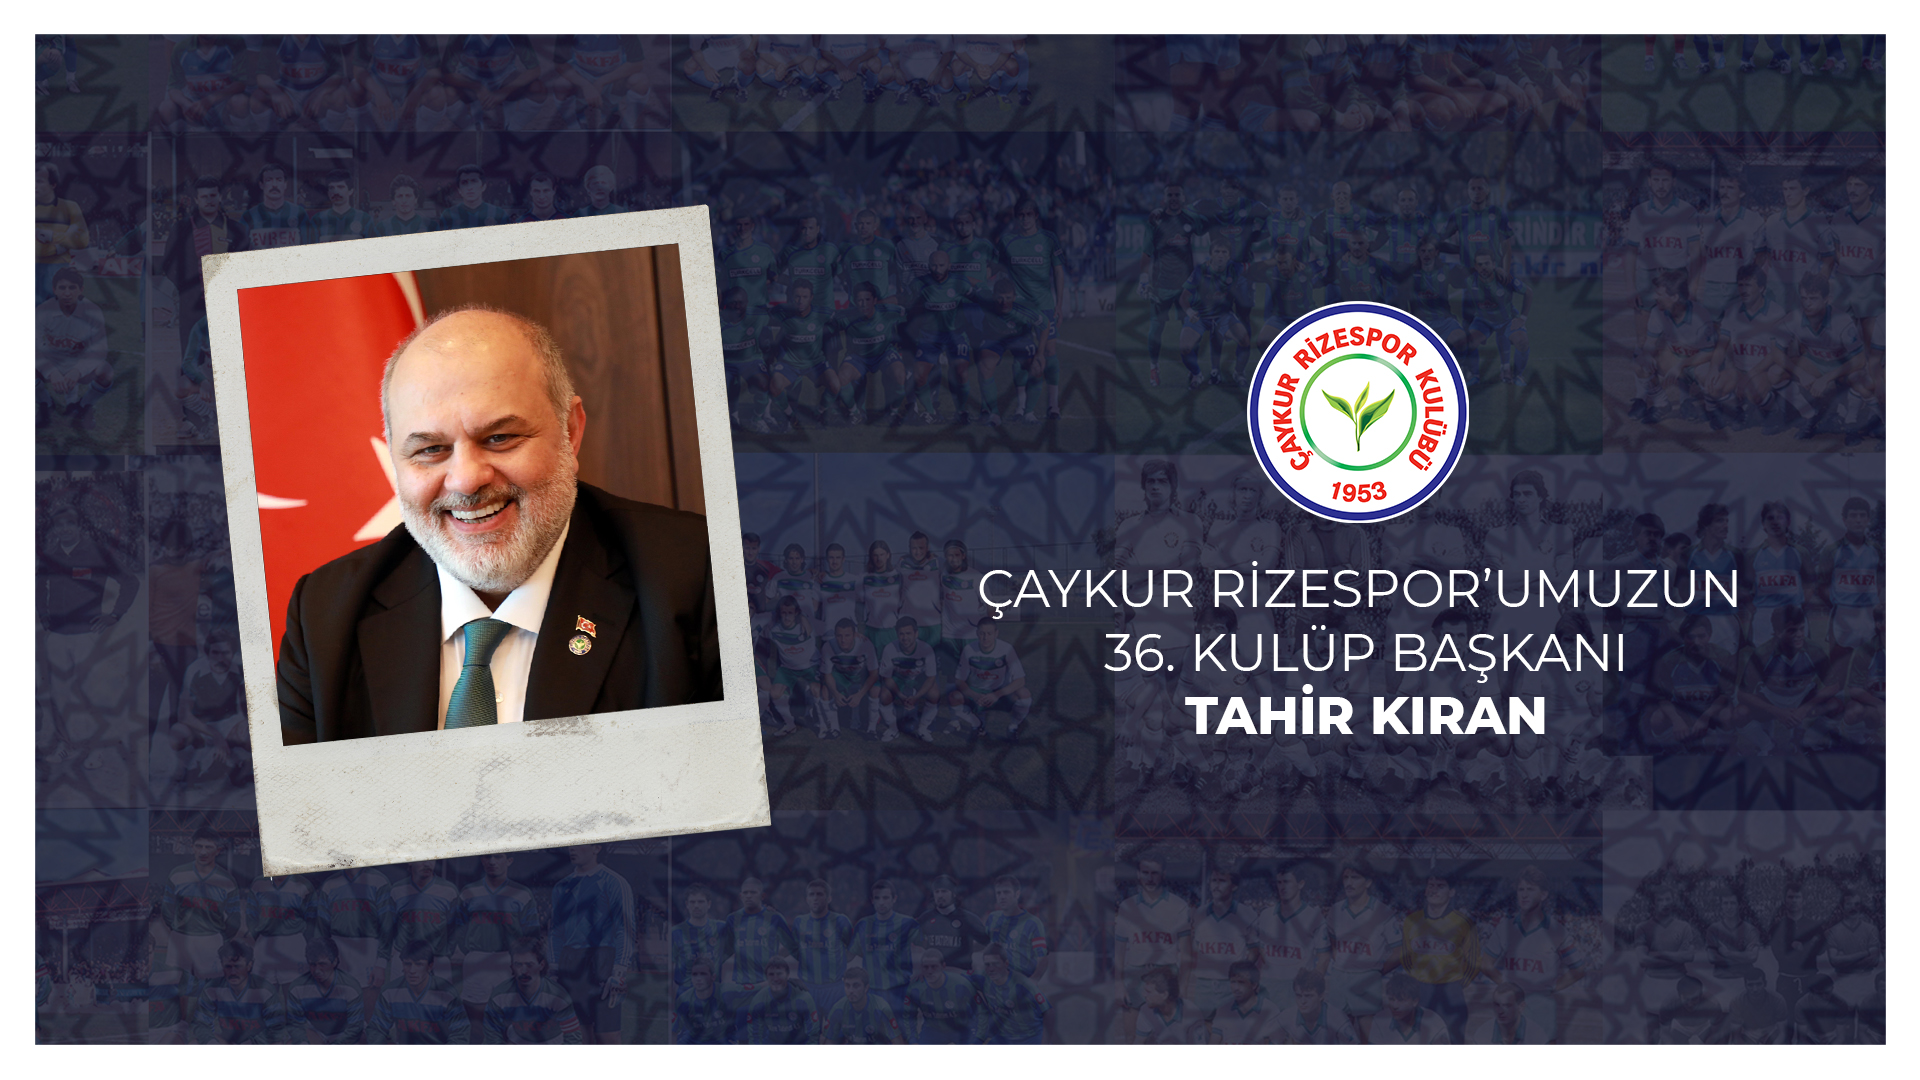 Çaykur Rizespor'umuzun 36. Kulüp Başkanı Tahir Kıran Oldu